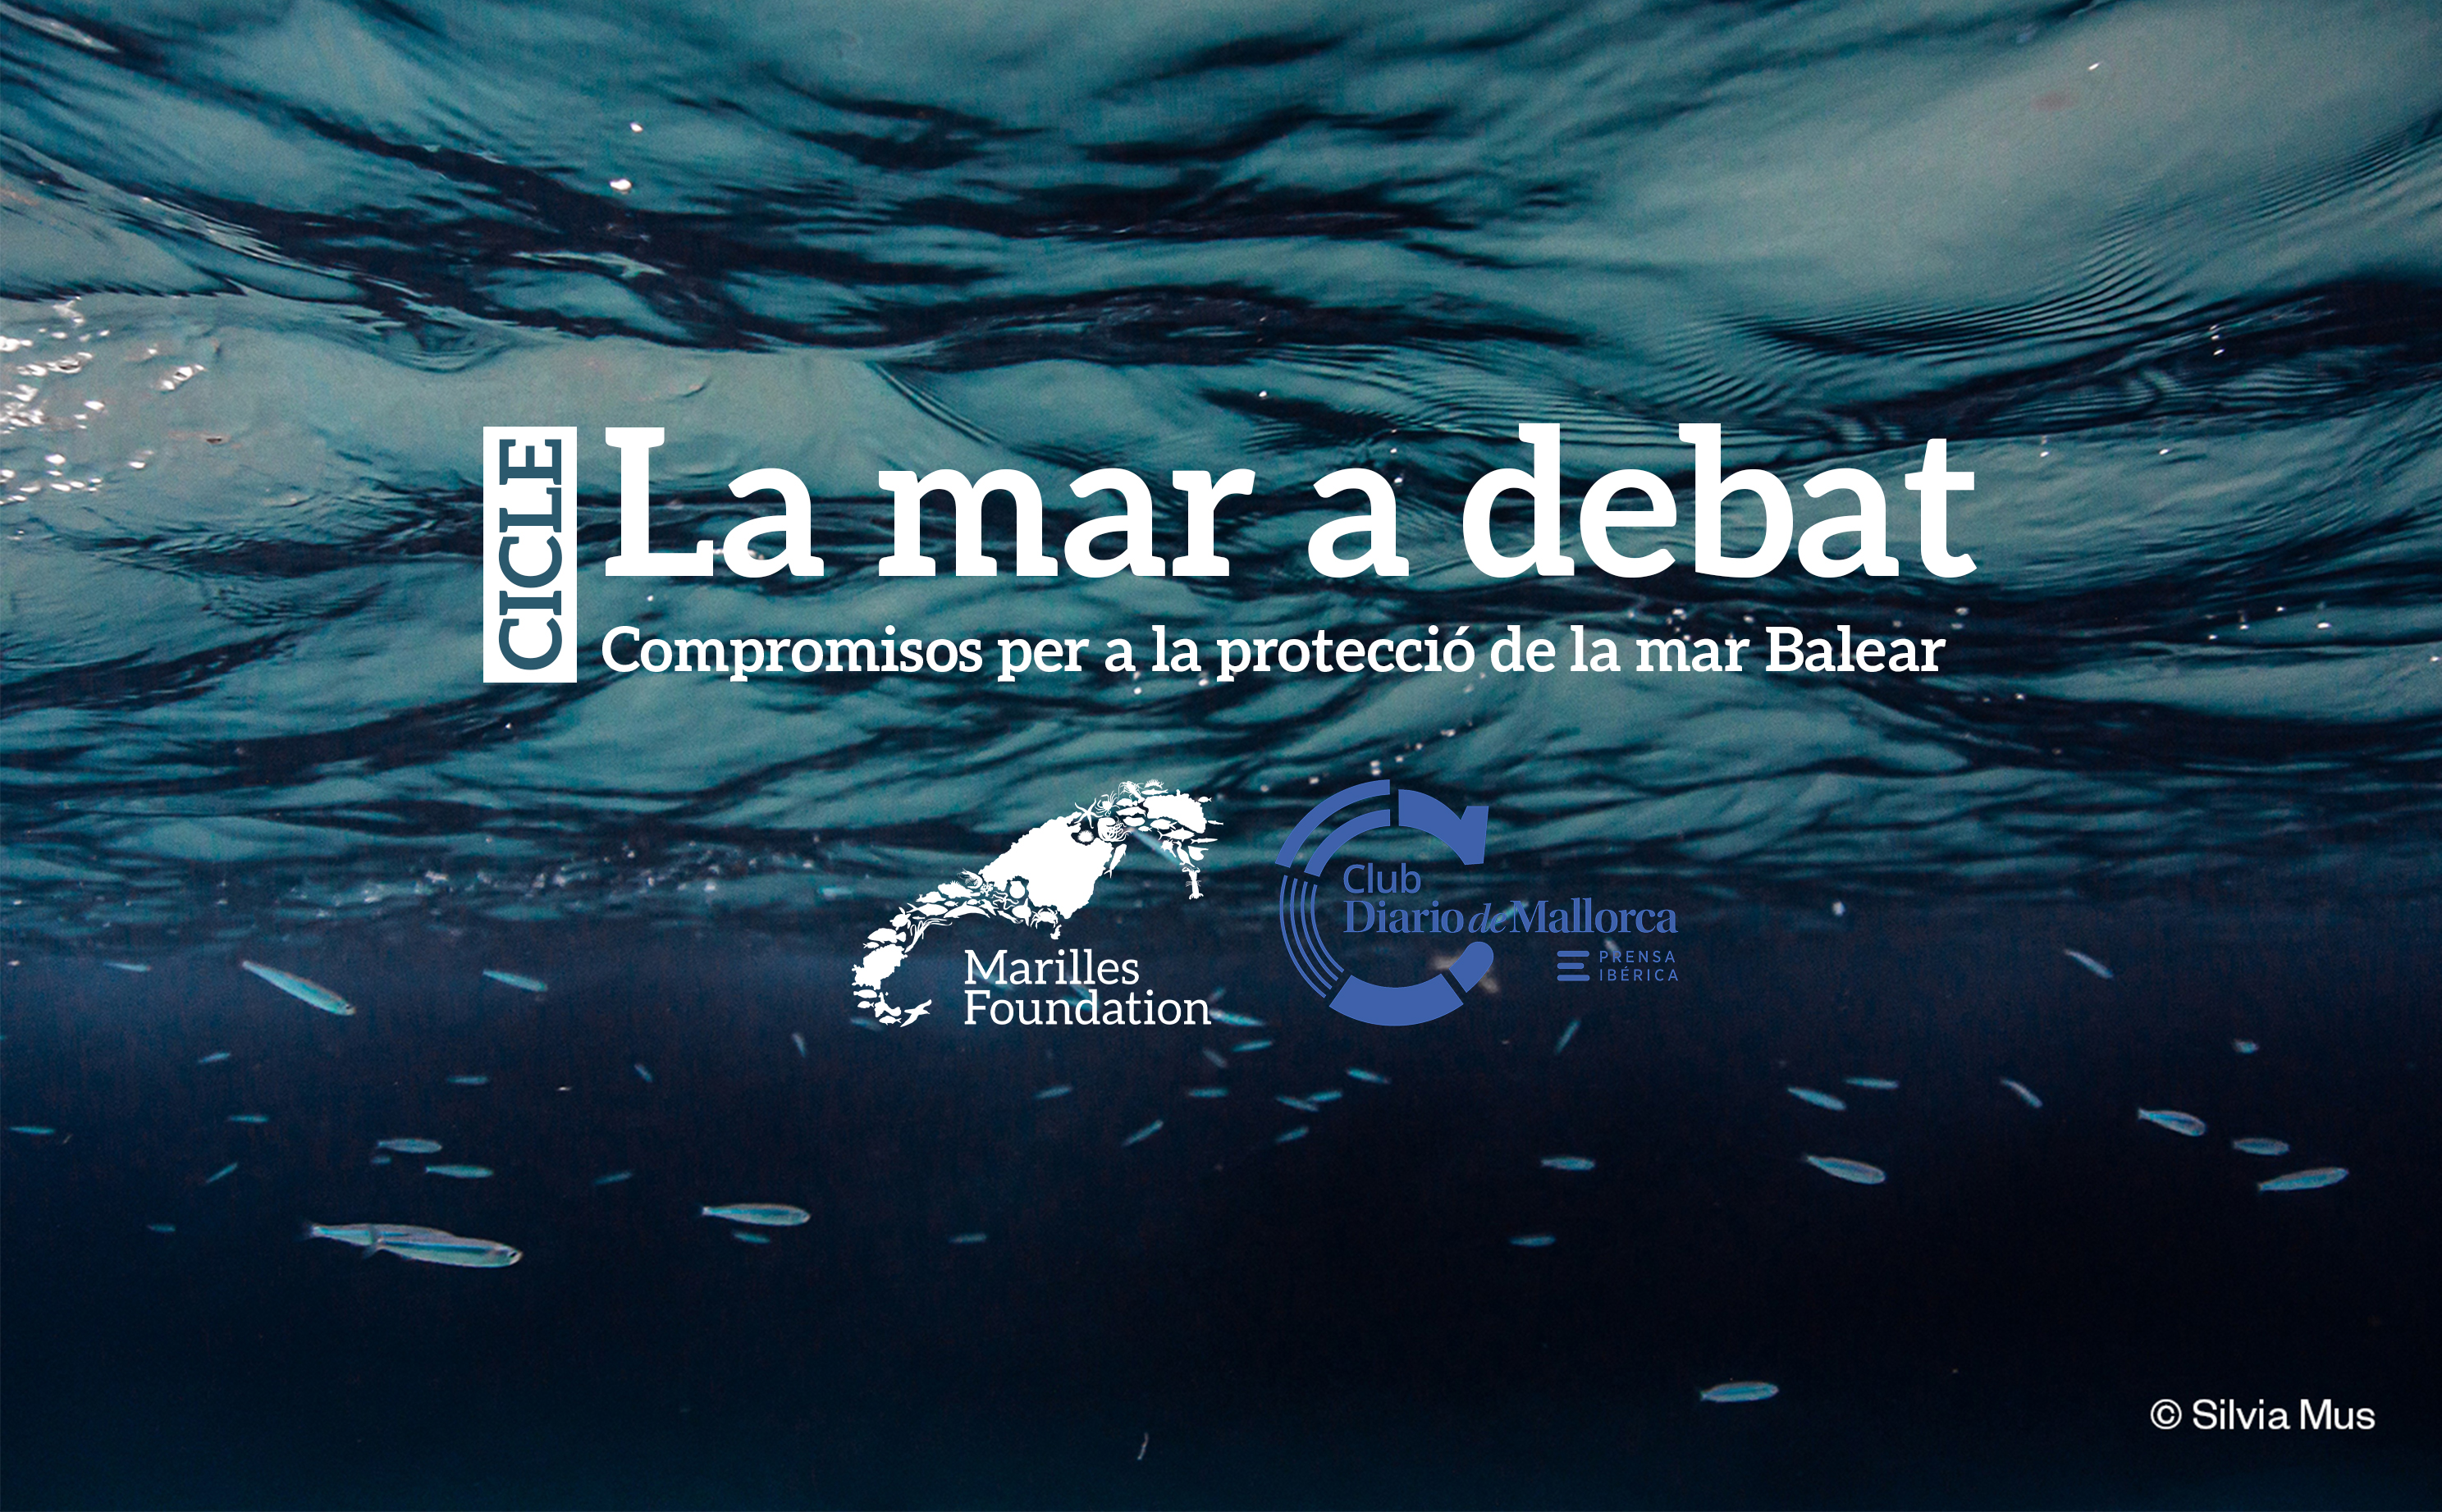 The sea under debate